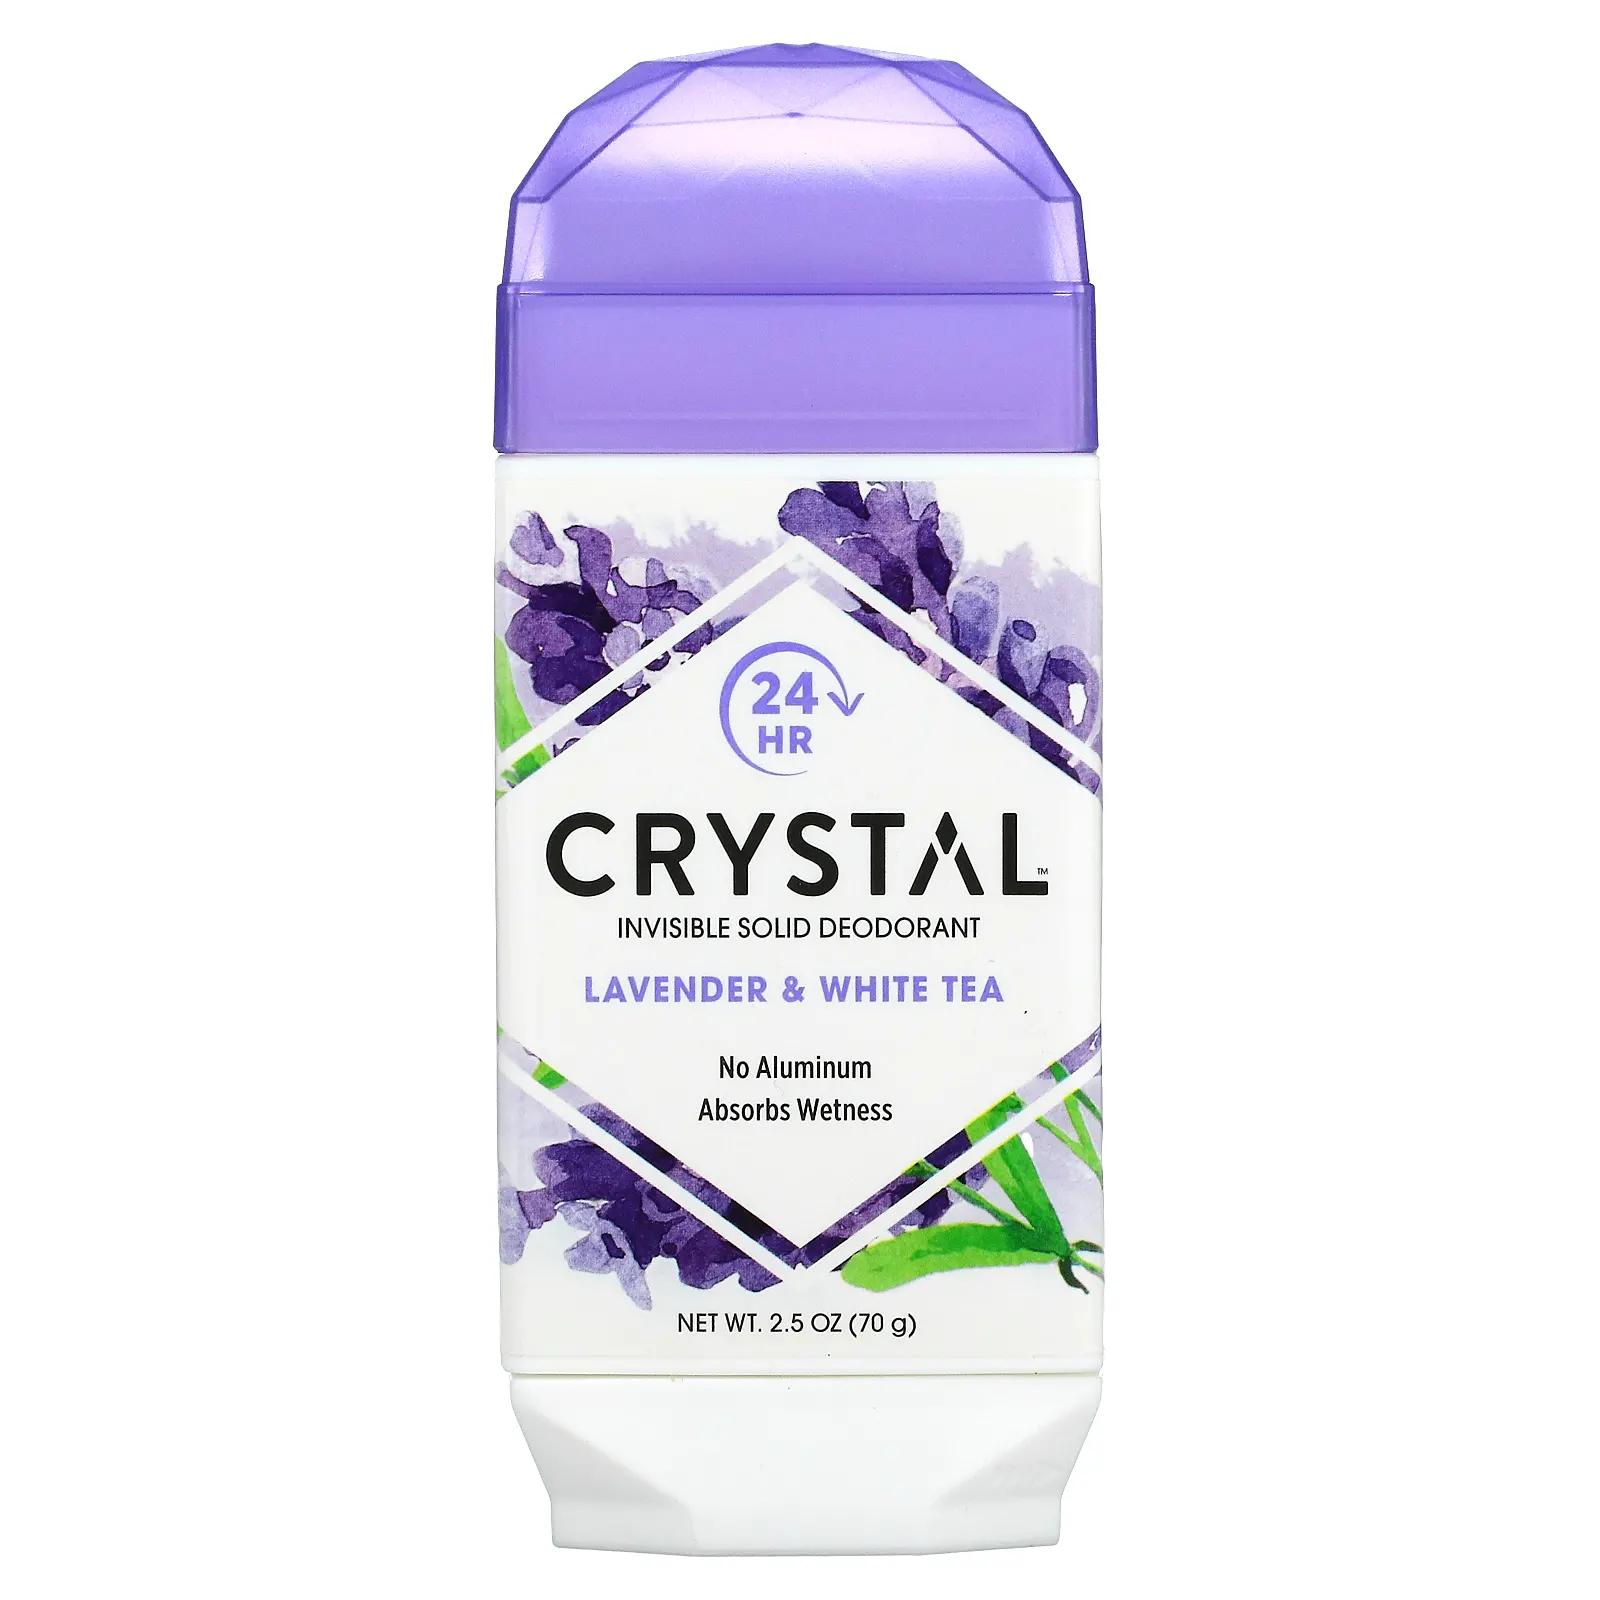 Crystal Body Deodorant Натуральный дезодорант лаванда и белый чай 2,5 унц. (70 г) crystal crystal дезодорант твердый невидимый лаванда и белый чай